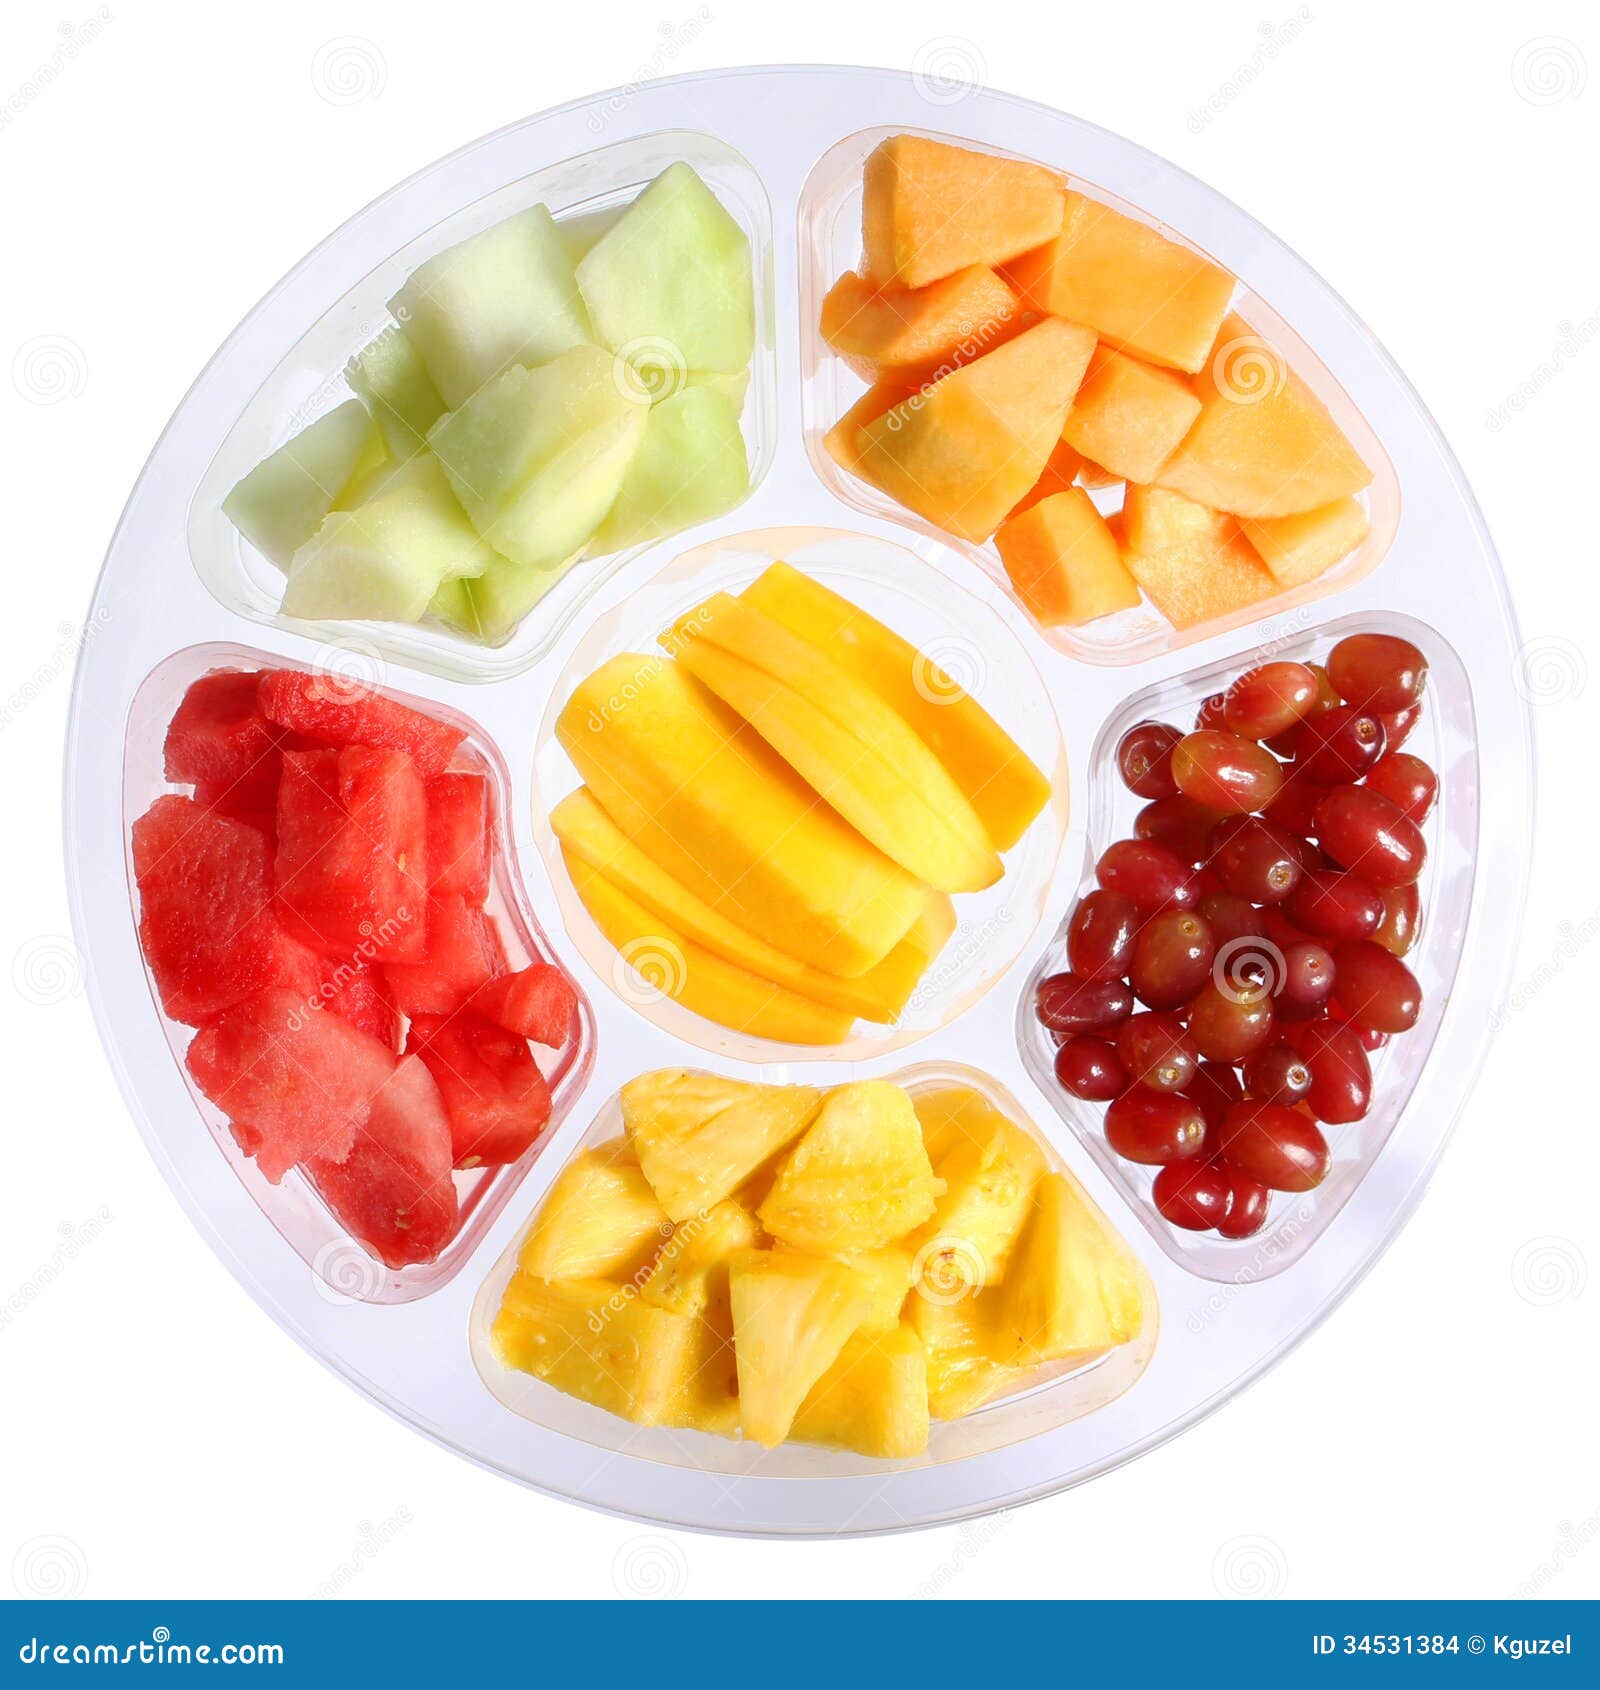 Rayon Fruits frais découpés : barquettes en plastique de fruits mélangés  '(petits fruits entiers et fruits découpés) - Phototheque du Ctifl